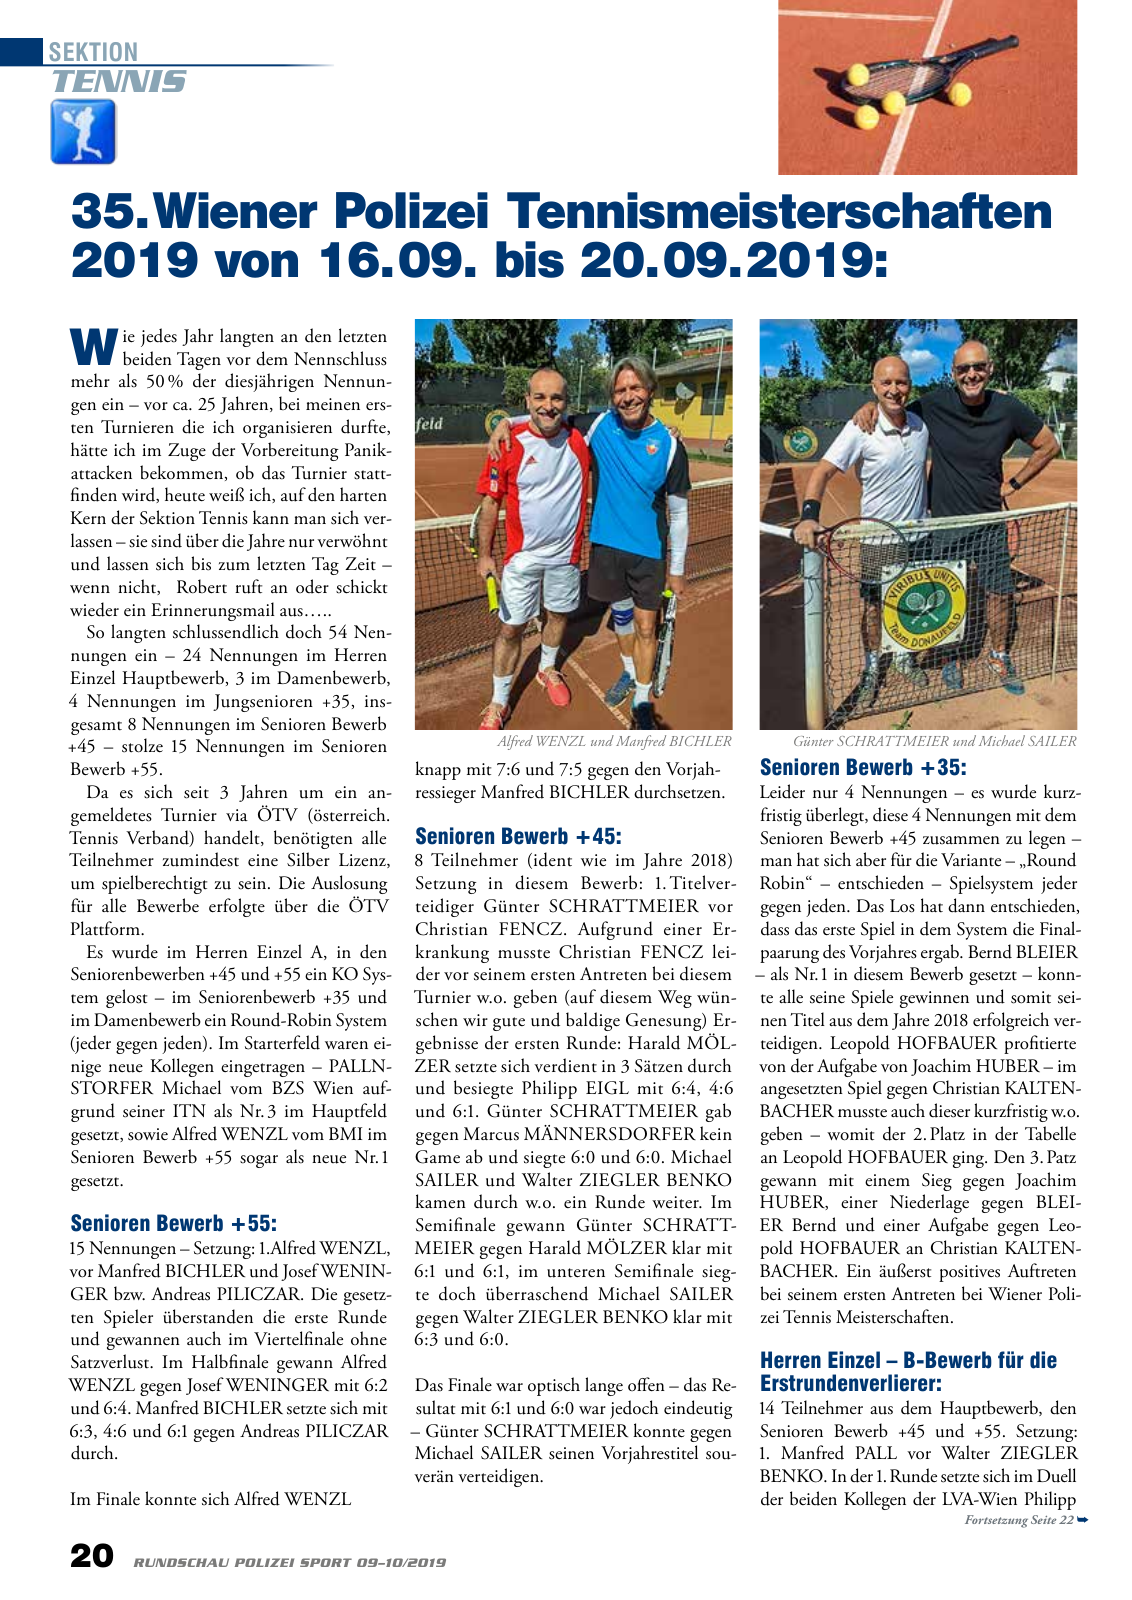 Vorschau Rundschau Polizei Sport 09-10/2019 Seite 20